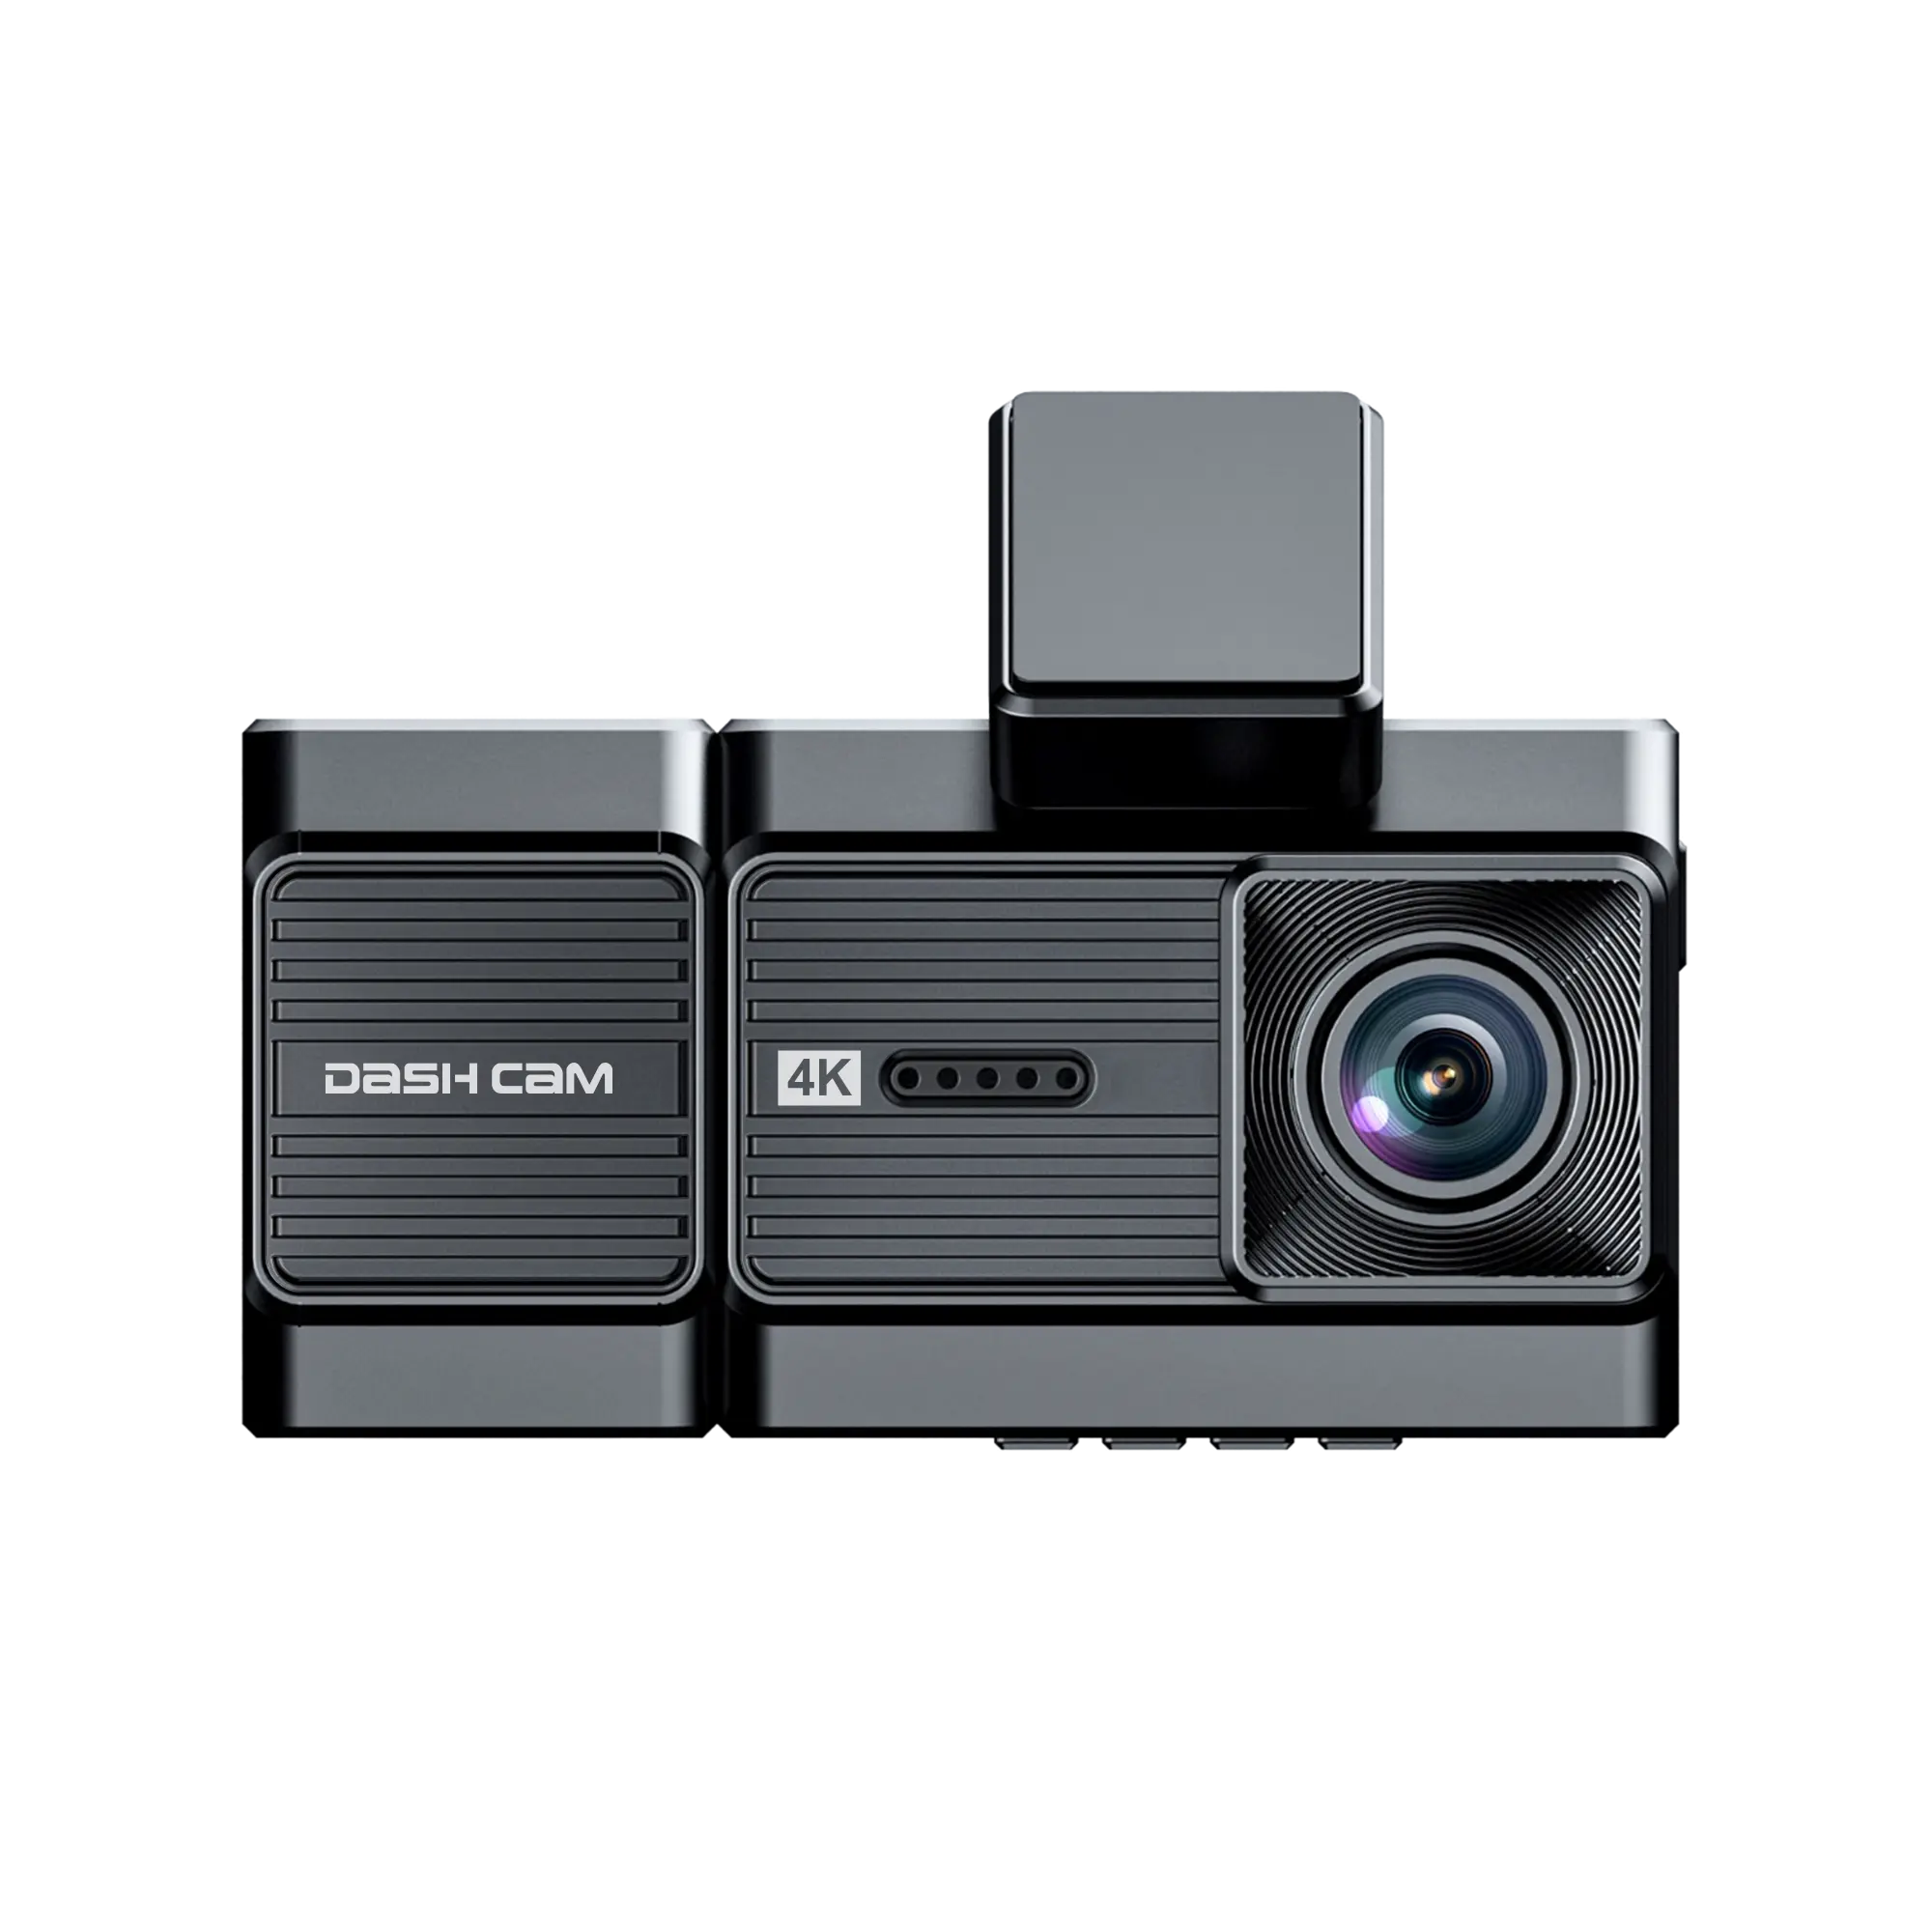 كاميرا سيارة مزدوجة بزاوية واسعة 140+120، للرؤية الليلية ووضع الركن، بشاشة IPS أمامية وداخلية 2.0 بوصة بدقة 4K+1080P وWi-Fi